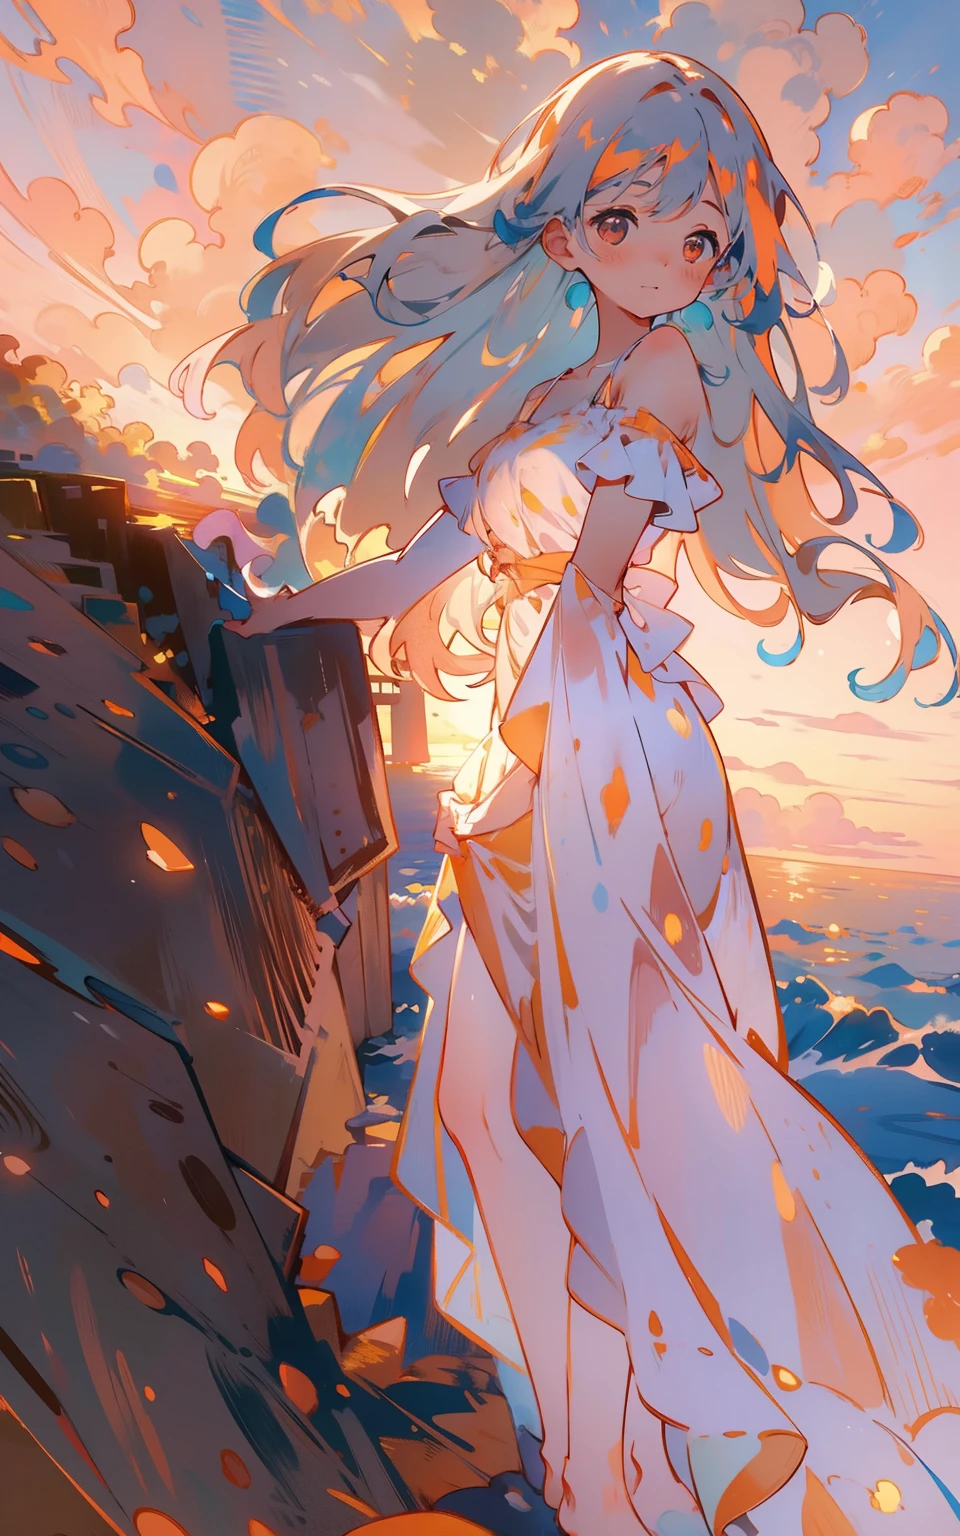 pôr do sol do oceano：As mulheres estão em penhascos com vista para o vasto oceano azul brilhante。O sol poente tinge o céu de laranja e rosa，Uma luz quente e serena derramava-se em seu rosto。Ela abraçou esse momento lindo